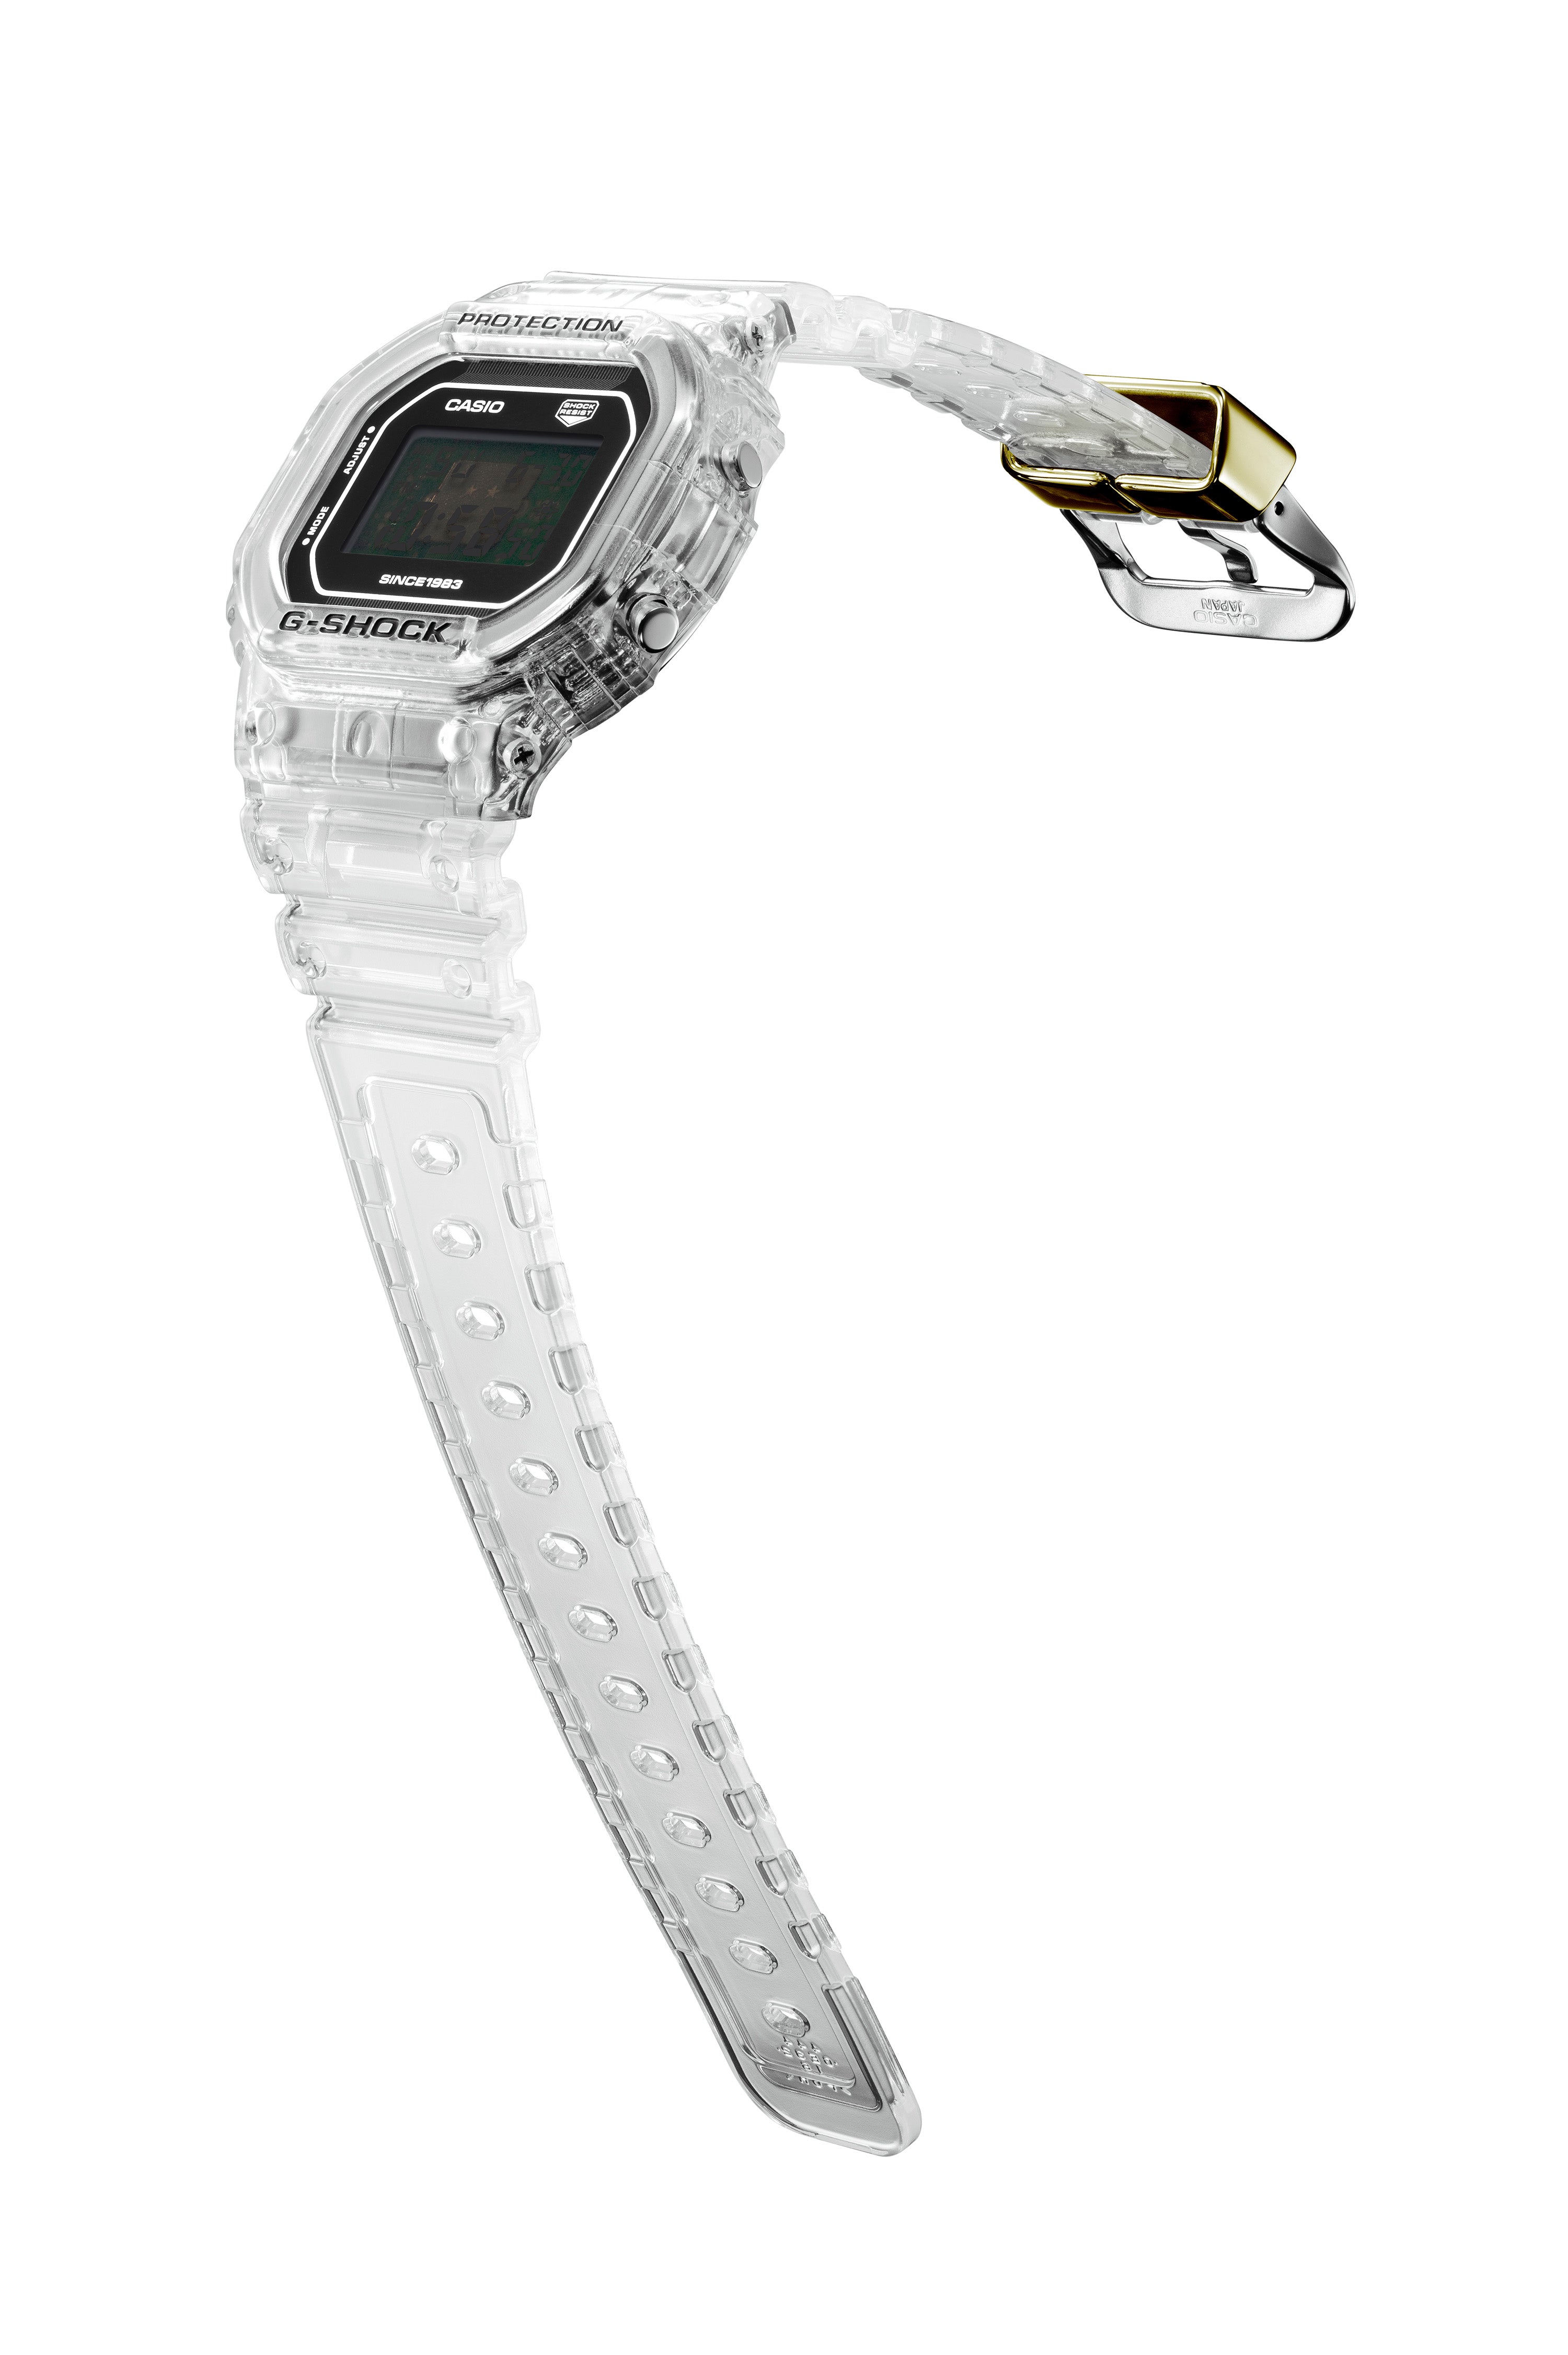 付属品は全て揃っておりますCASIO G-SHOCK DW-5040RX-7JR 40周年 腕時計